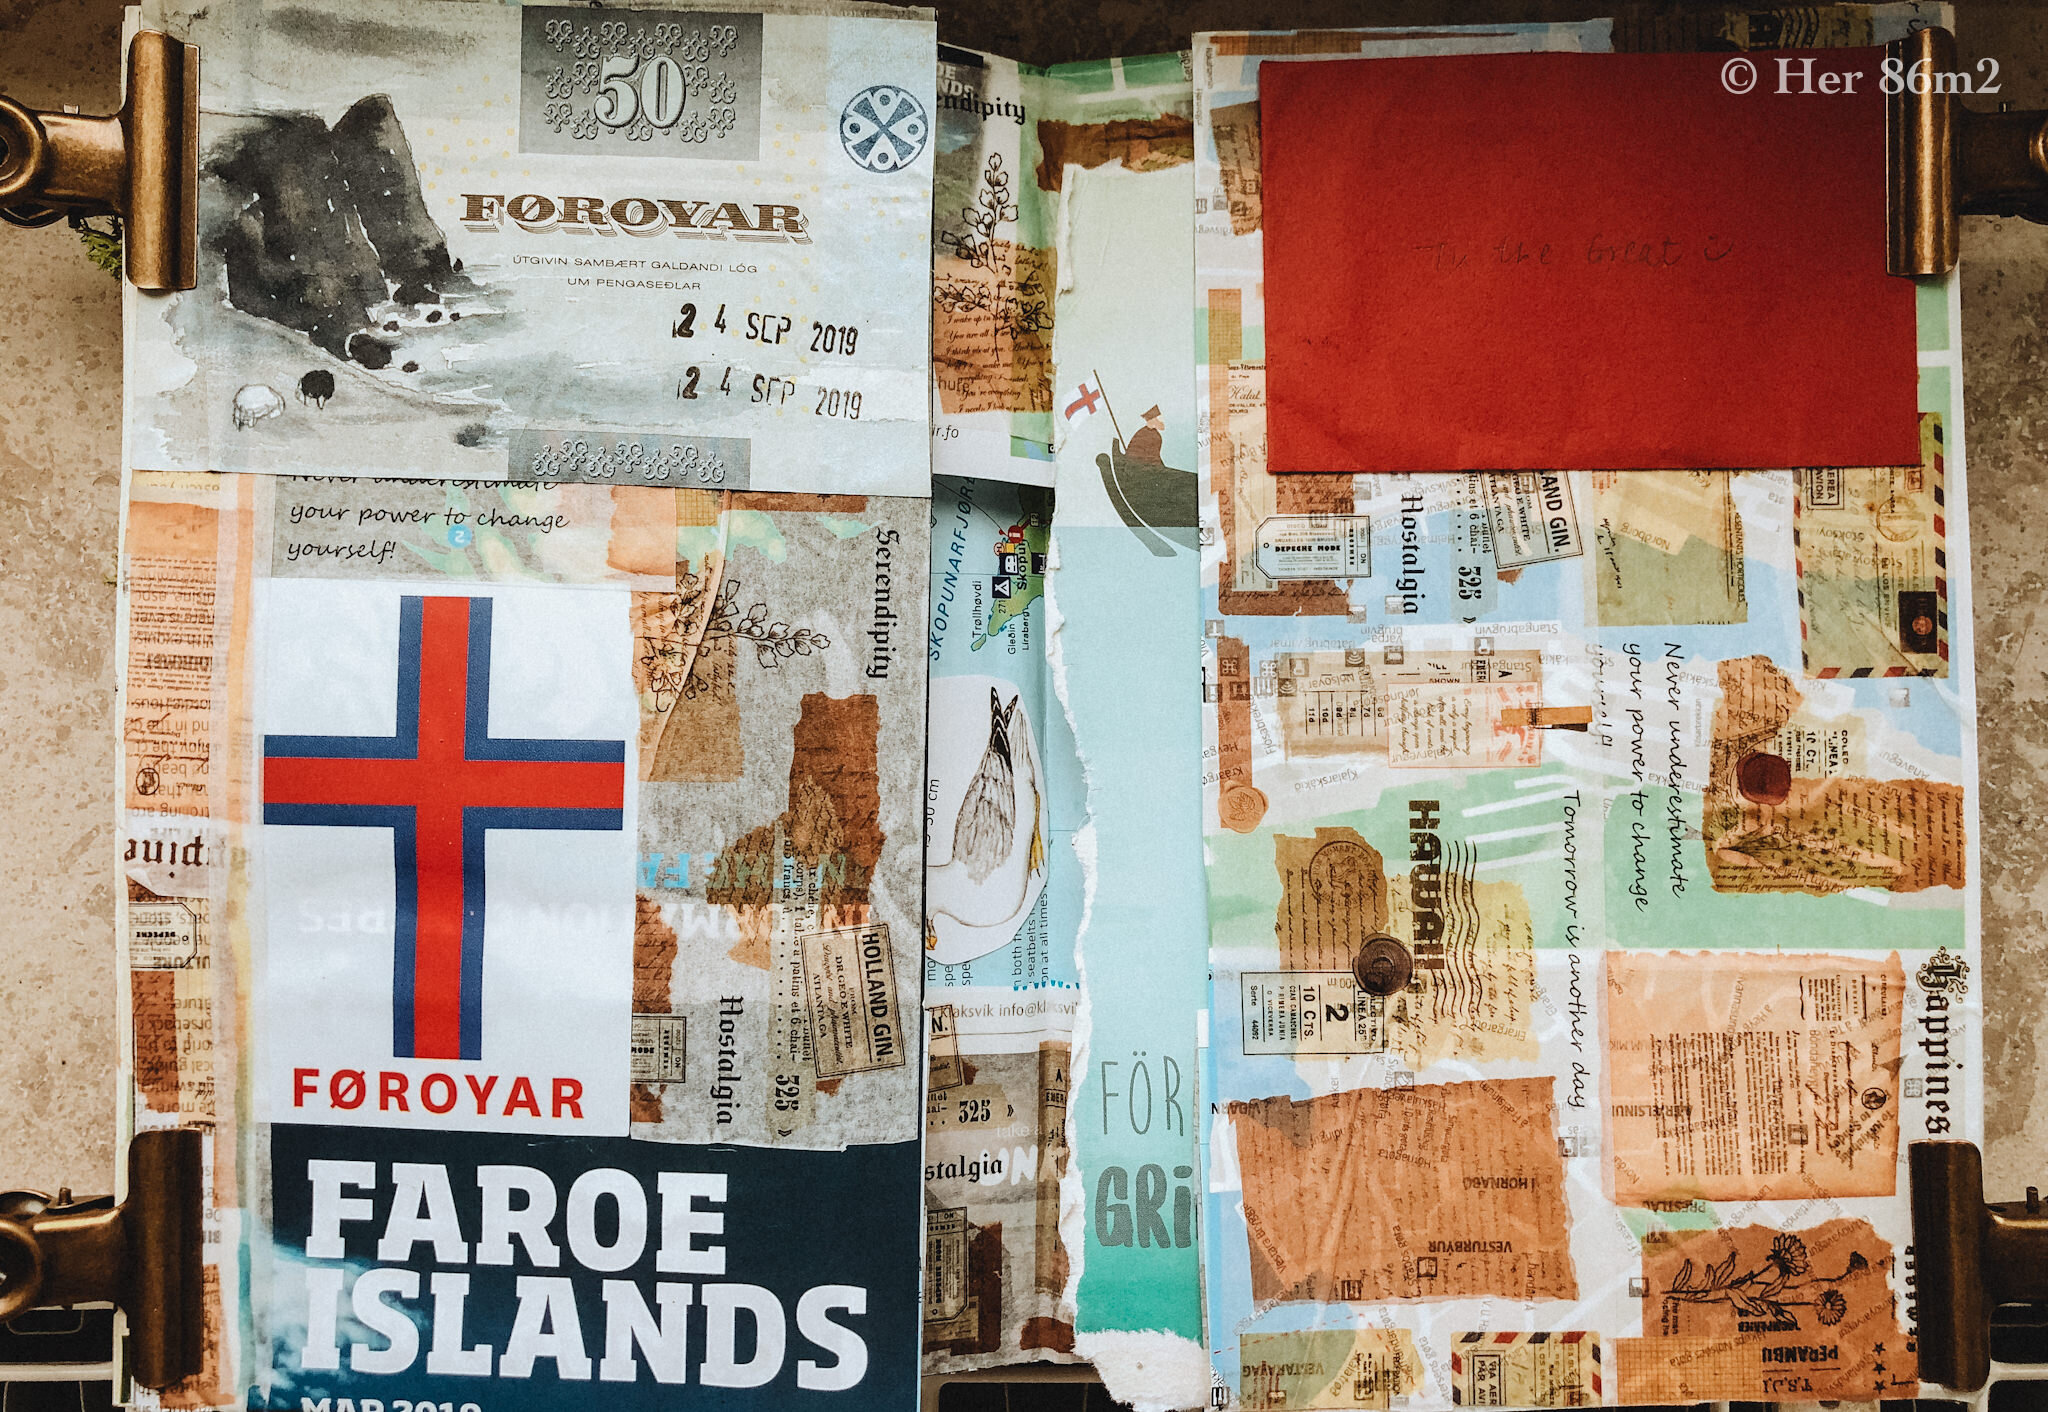  Faroe Islands  https://www.her86m2.com/travel/unspoiled-faroe-islands  